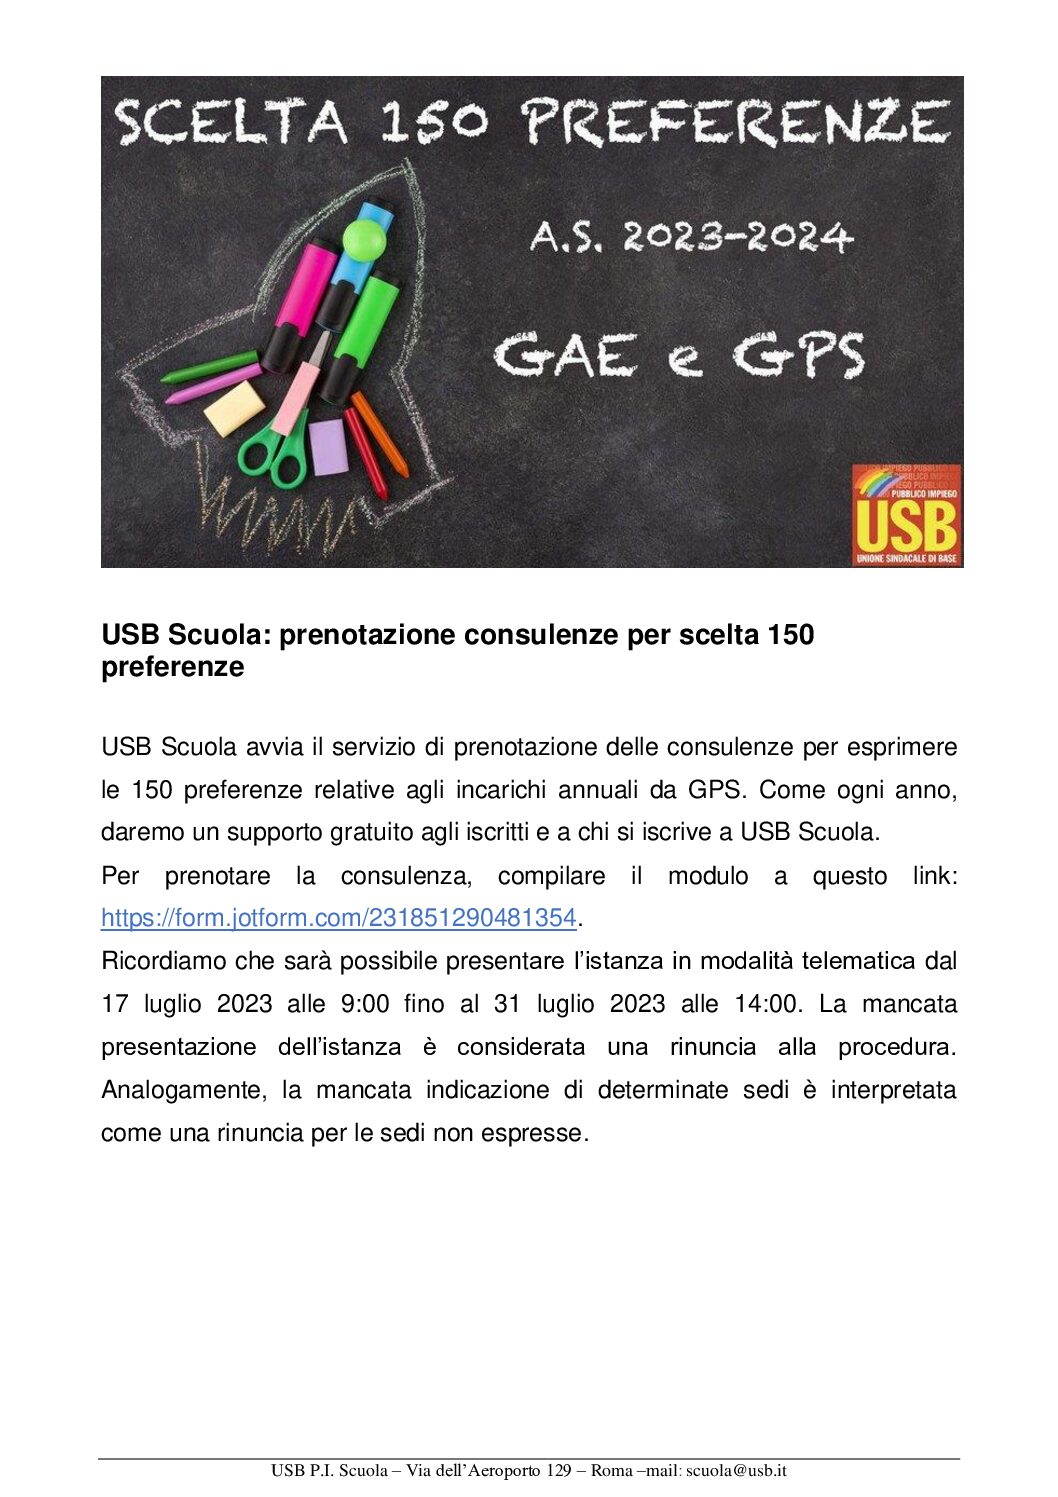 USB_Scuola_prenotazione_consulenze_per_scelta_150_preferenze-1